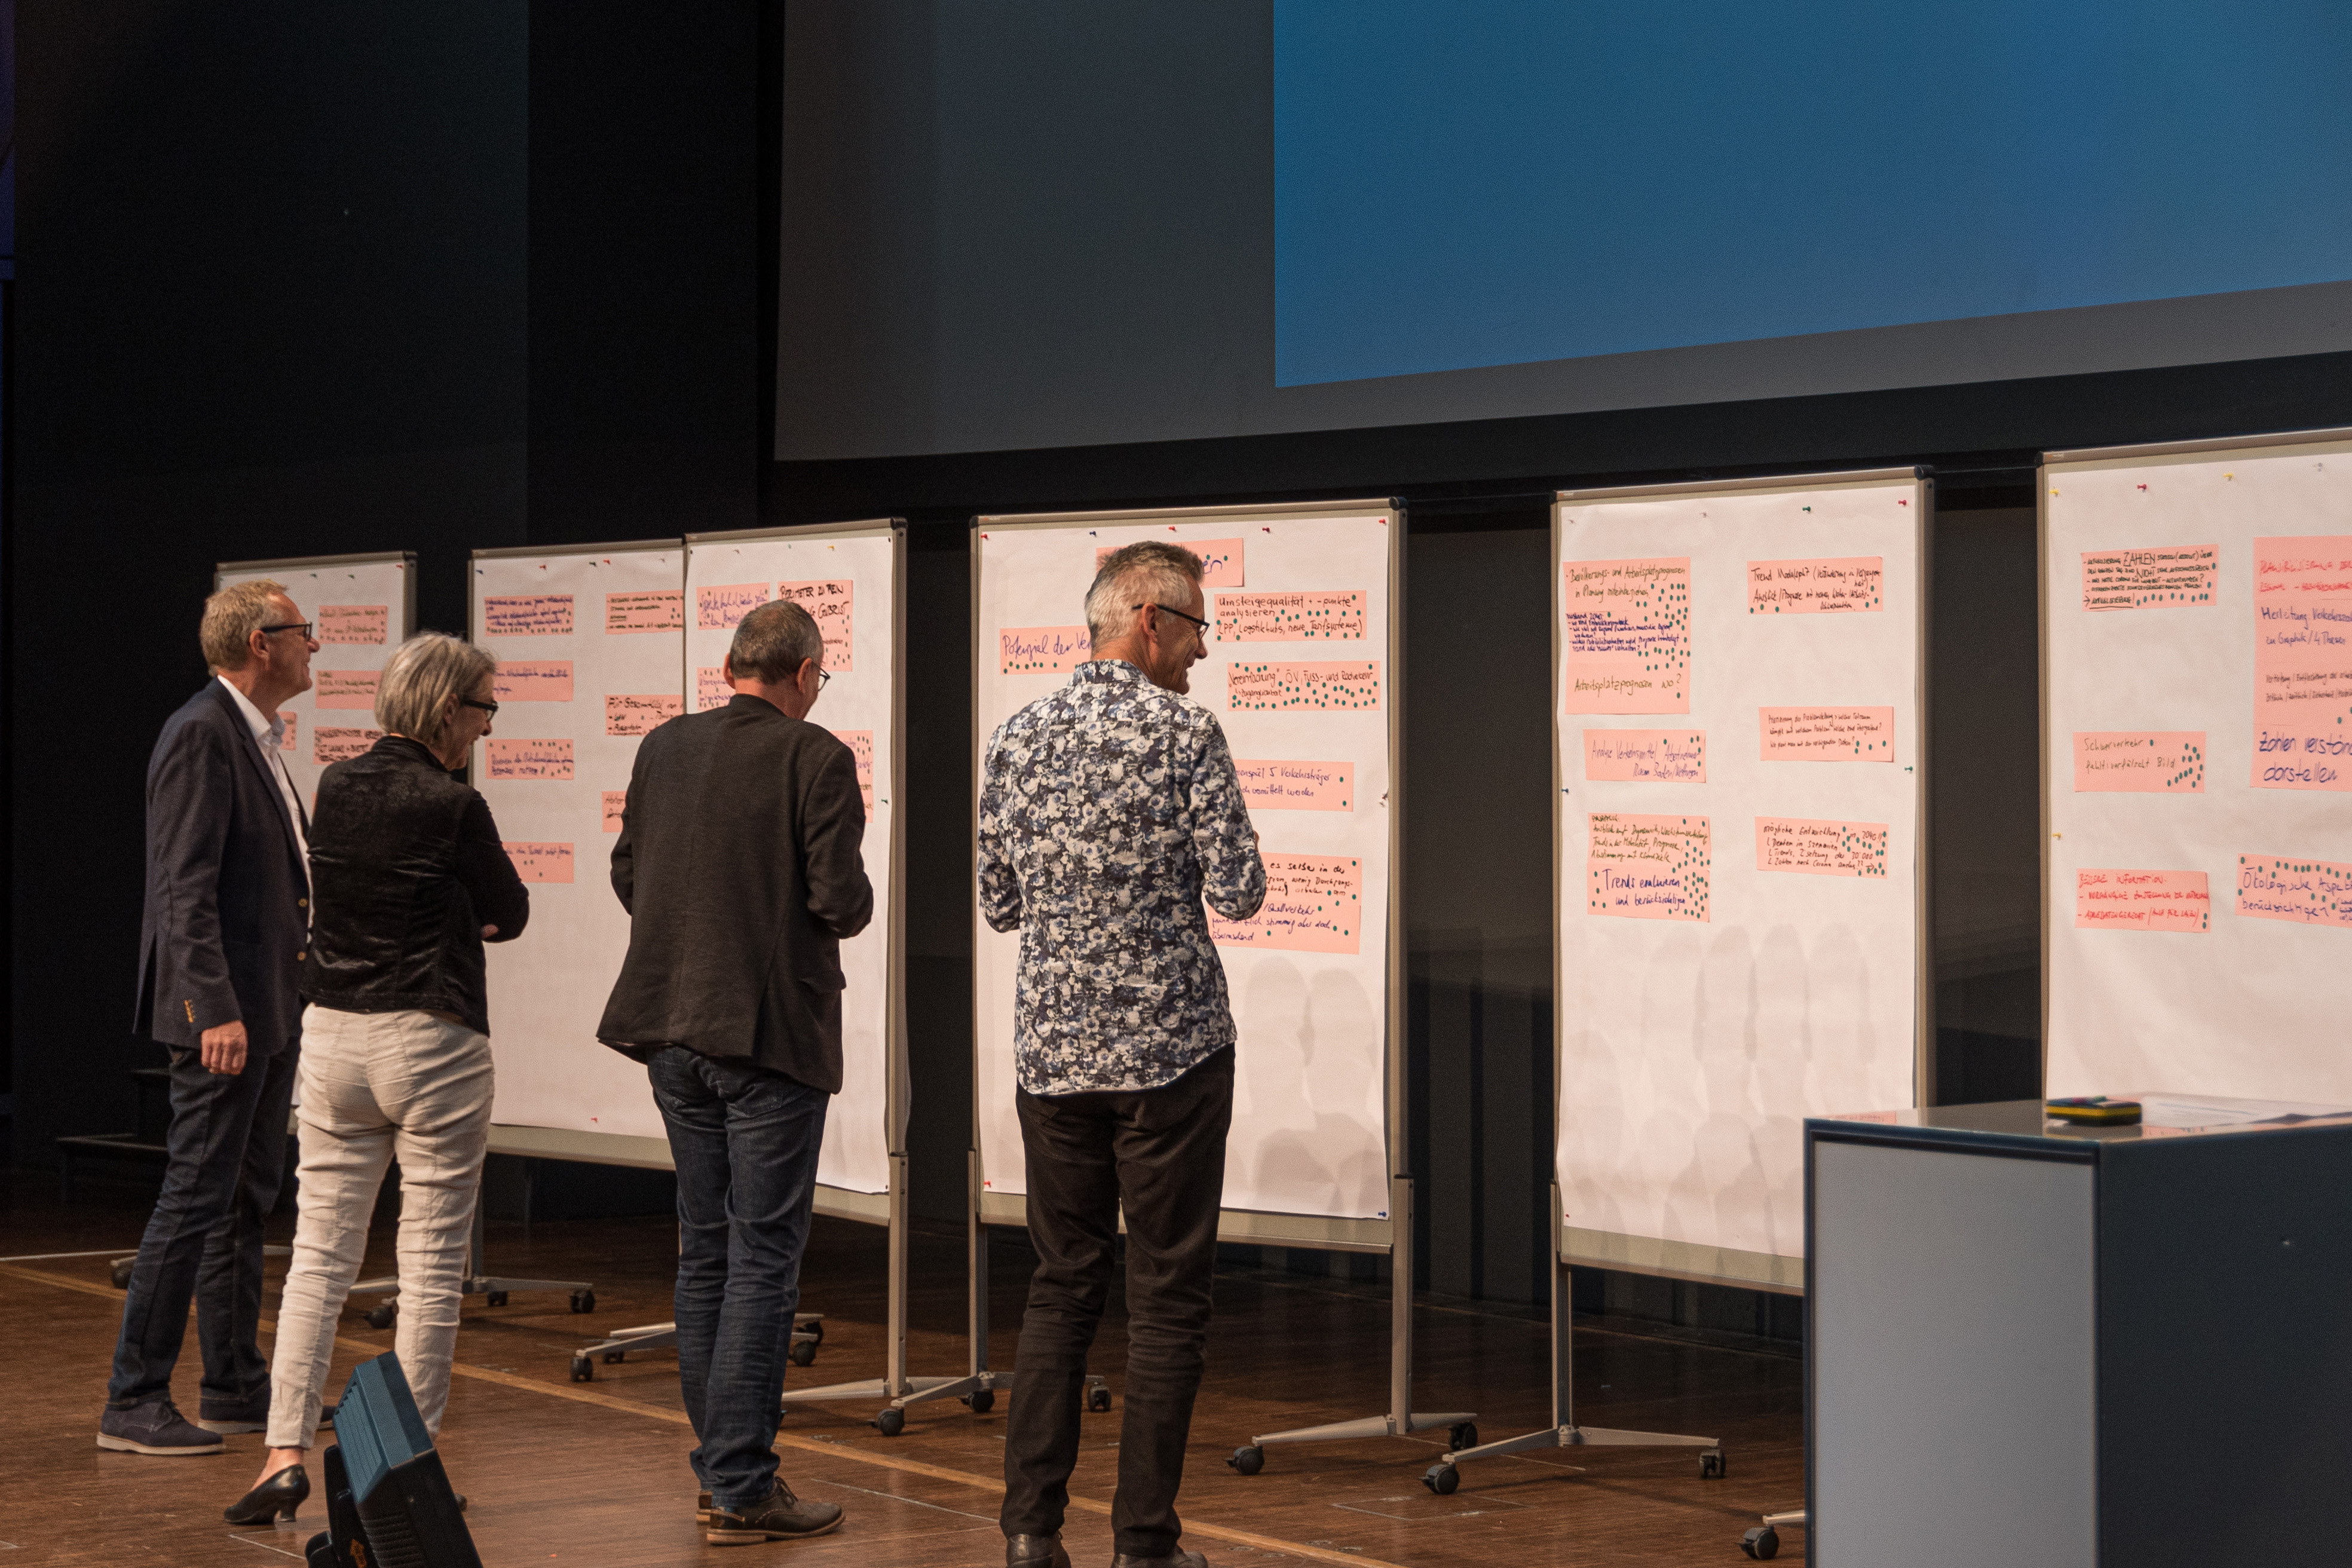 An der ersten Mobilitätskonferenz des GVK Raum Baden und Umgebung vom 24.9.2022 geben erste Ideen und Inputs.